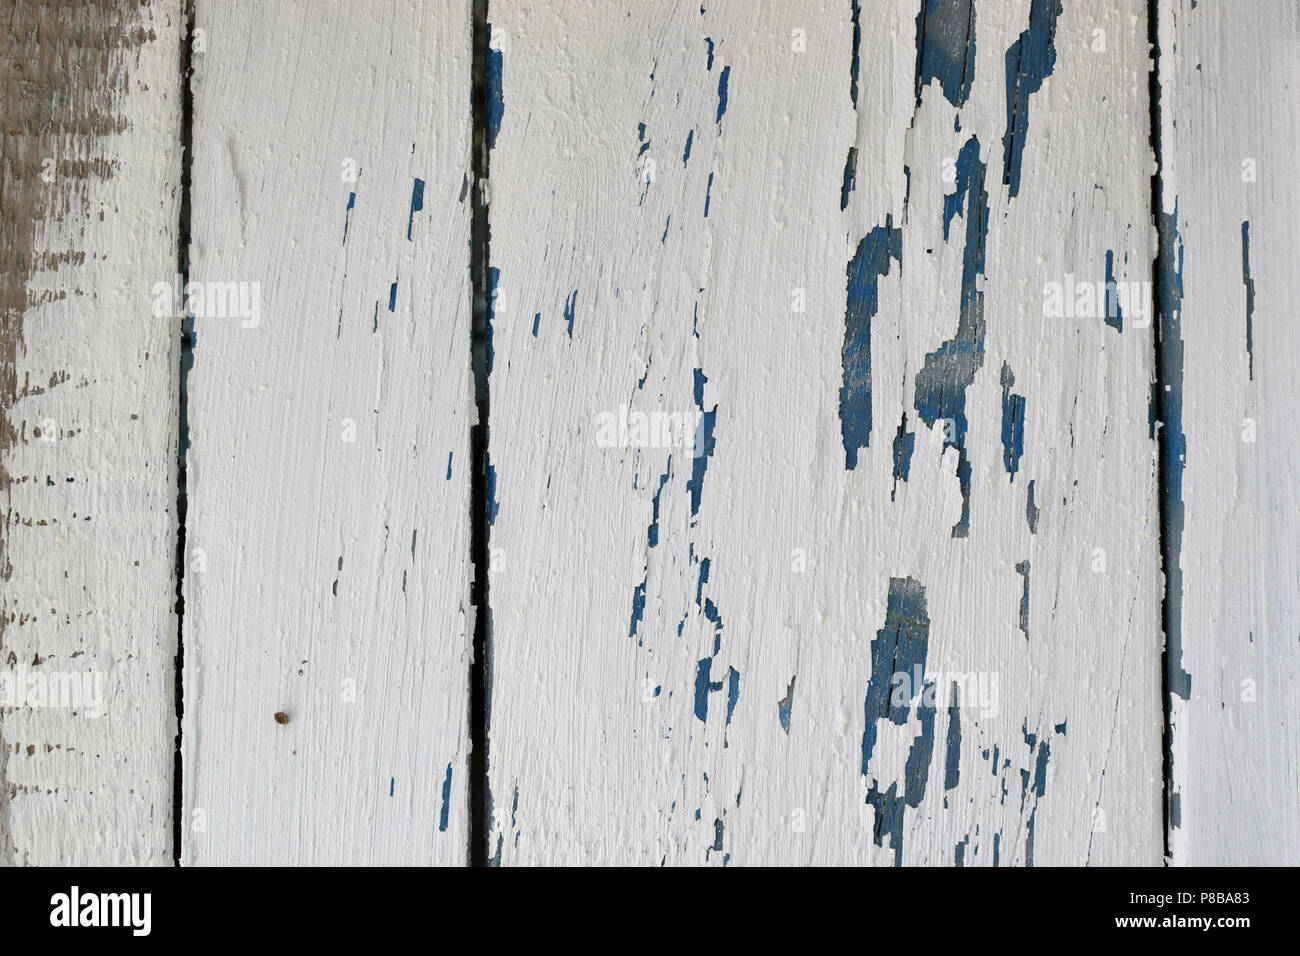 Legno stagionato texture con vernice scheggiato. Abstract bianche e blu. Foto Stock